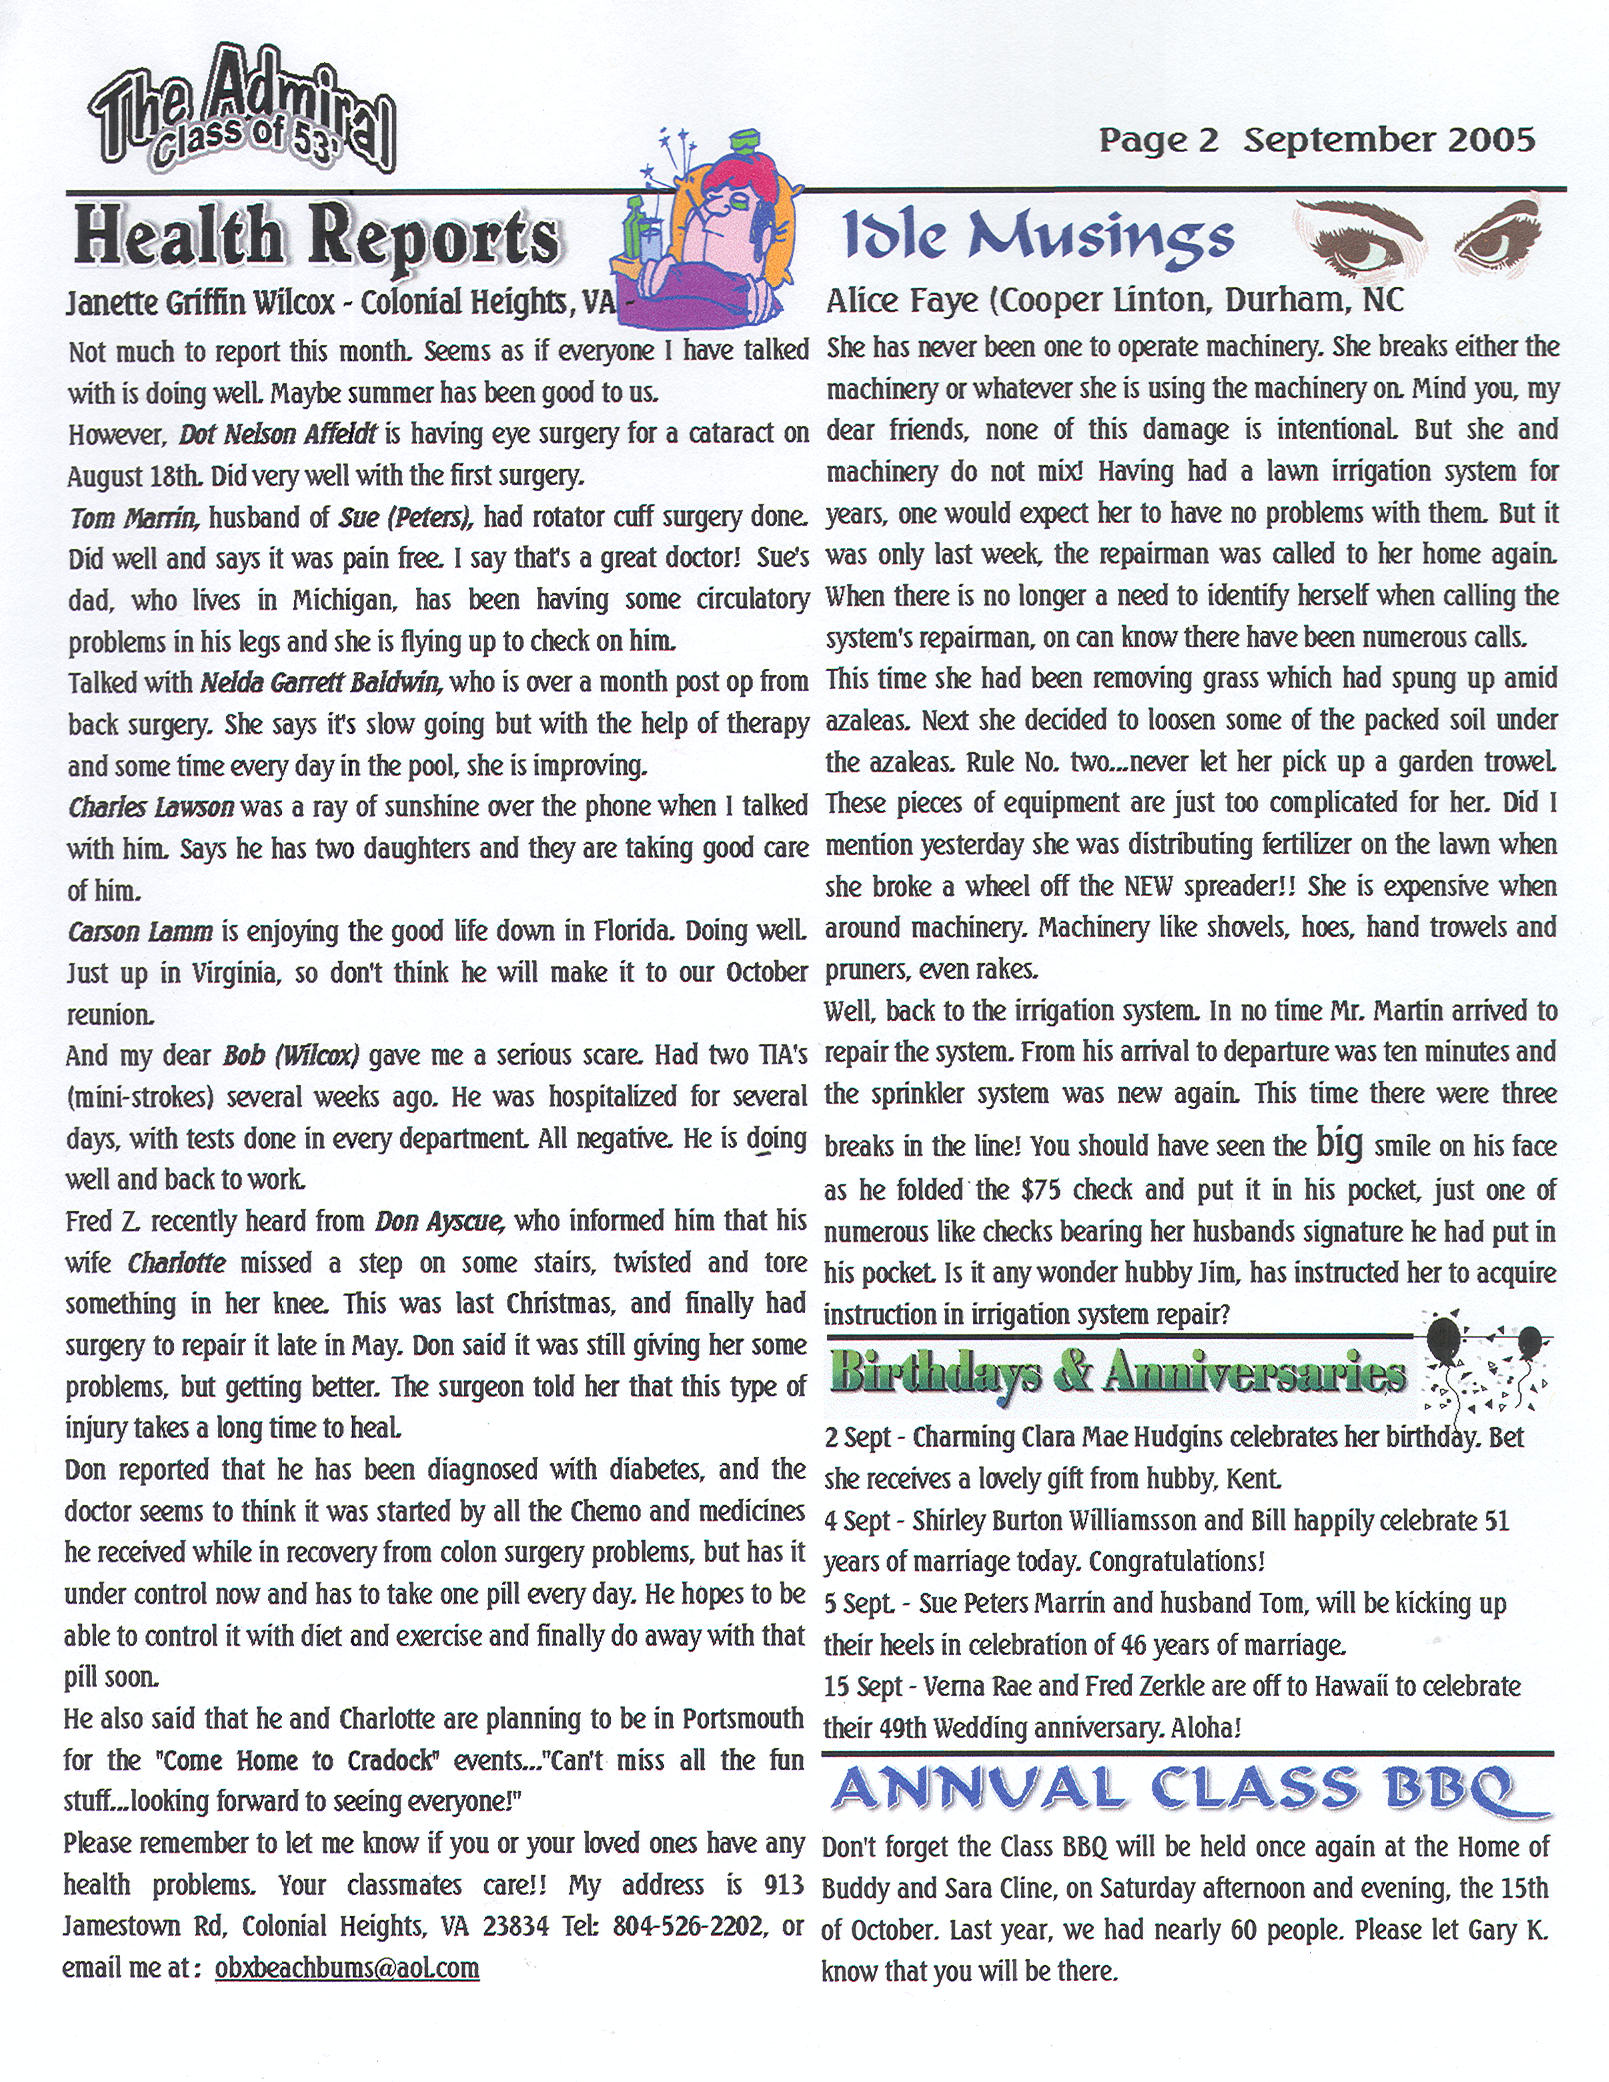 The Admiral - September 2005 - pg. 2